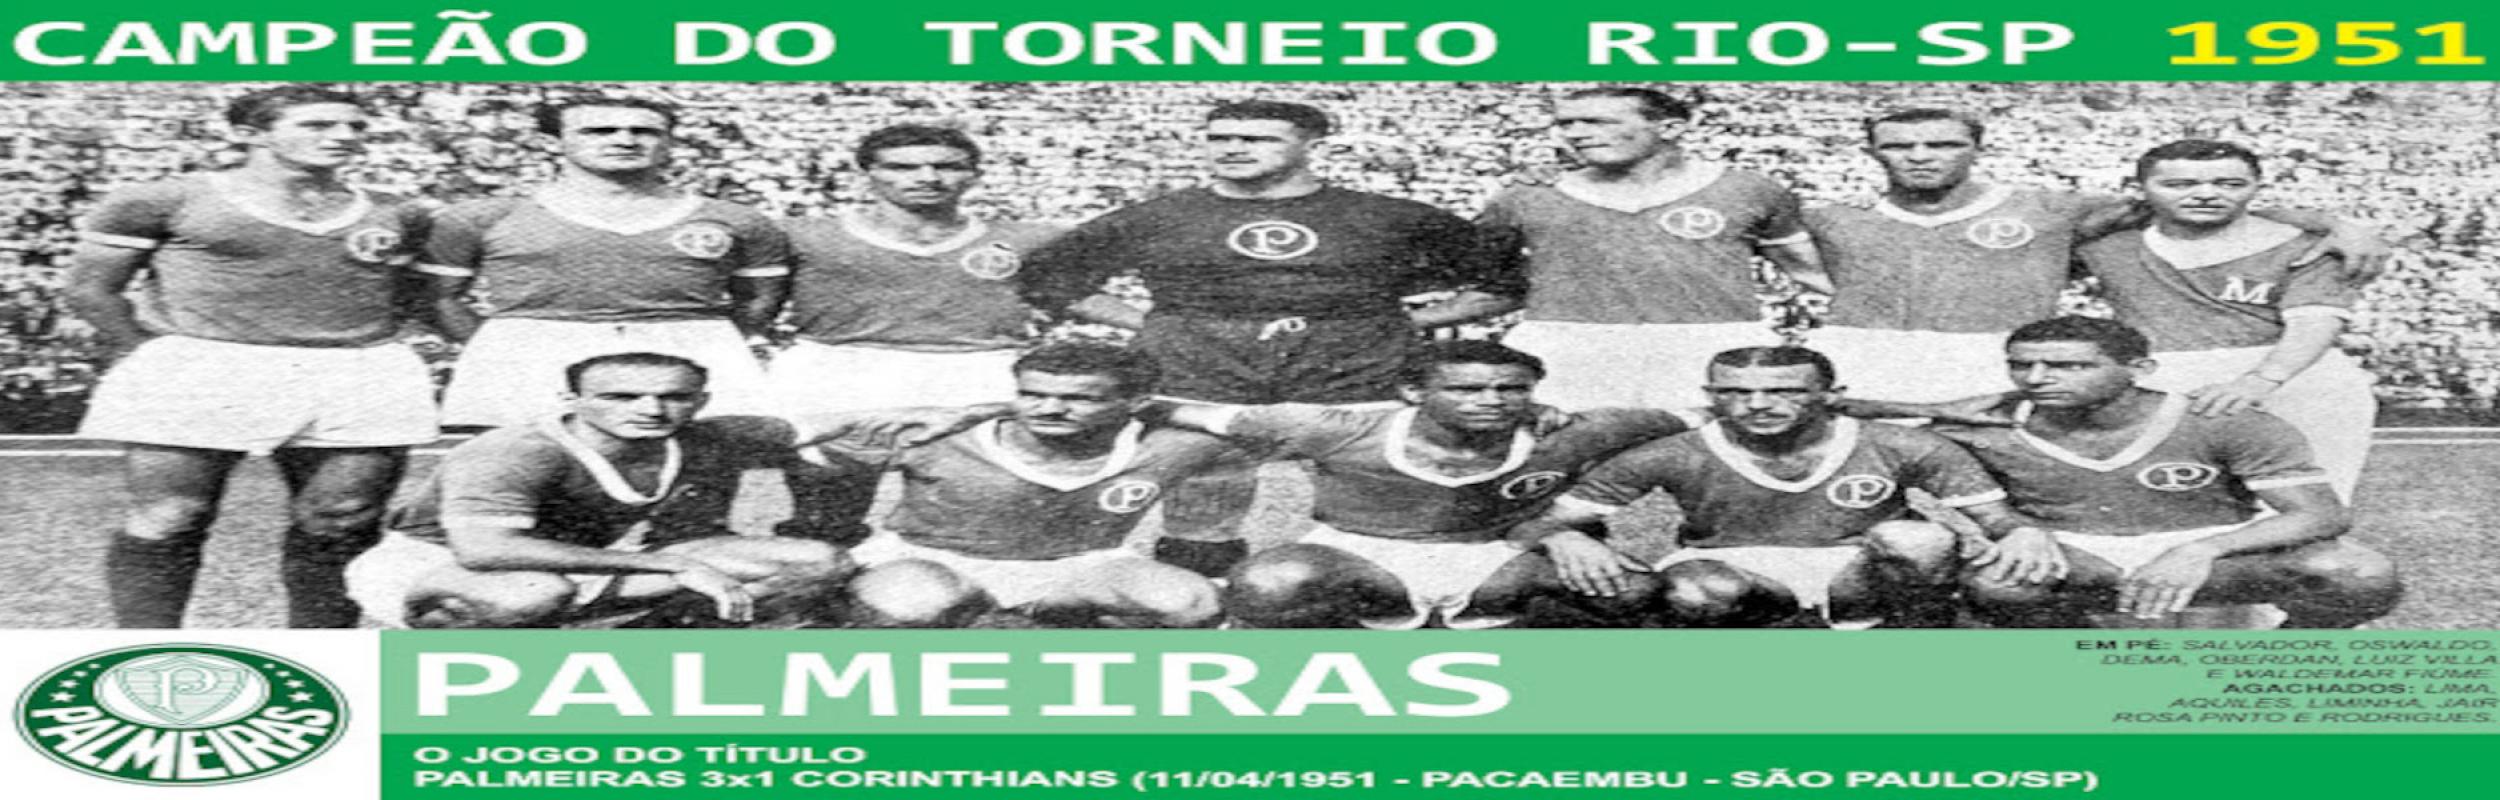 Torneio Rio-São Paulo